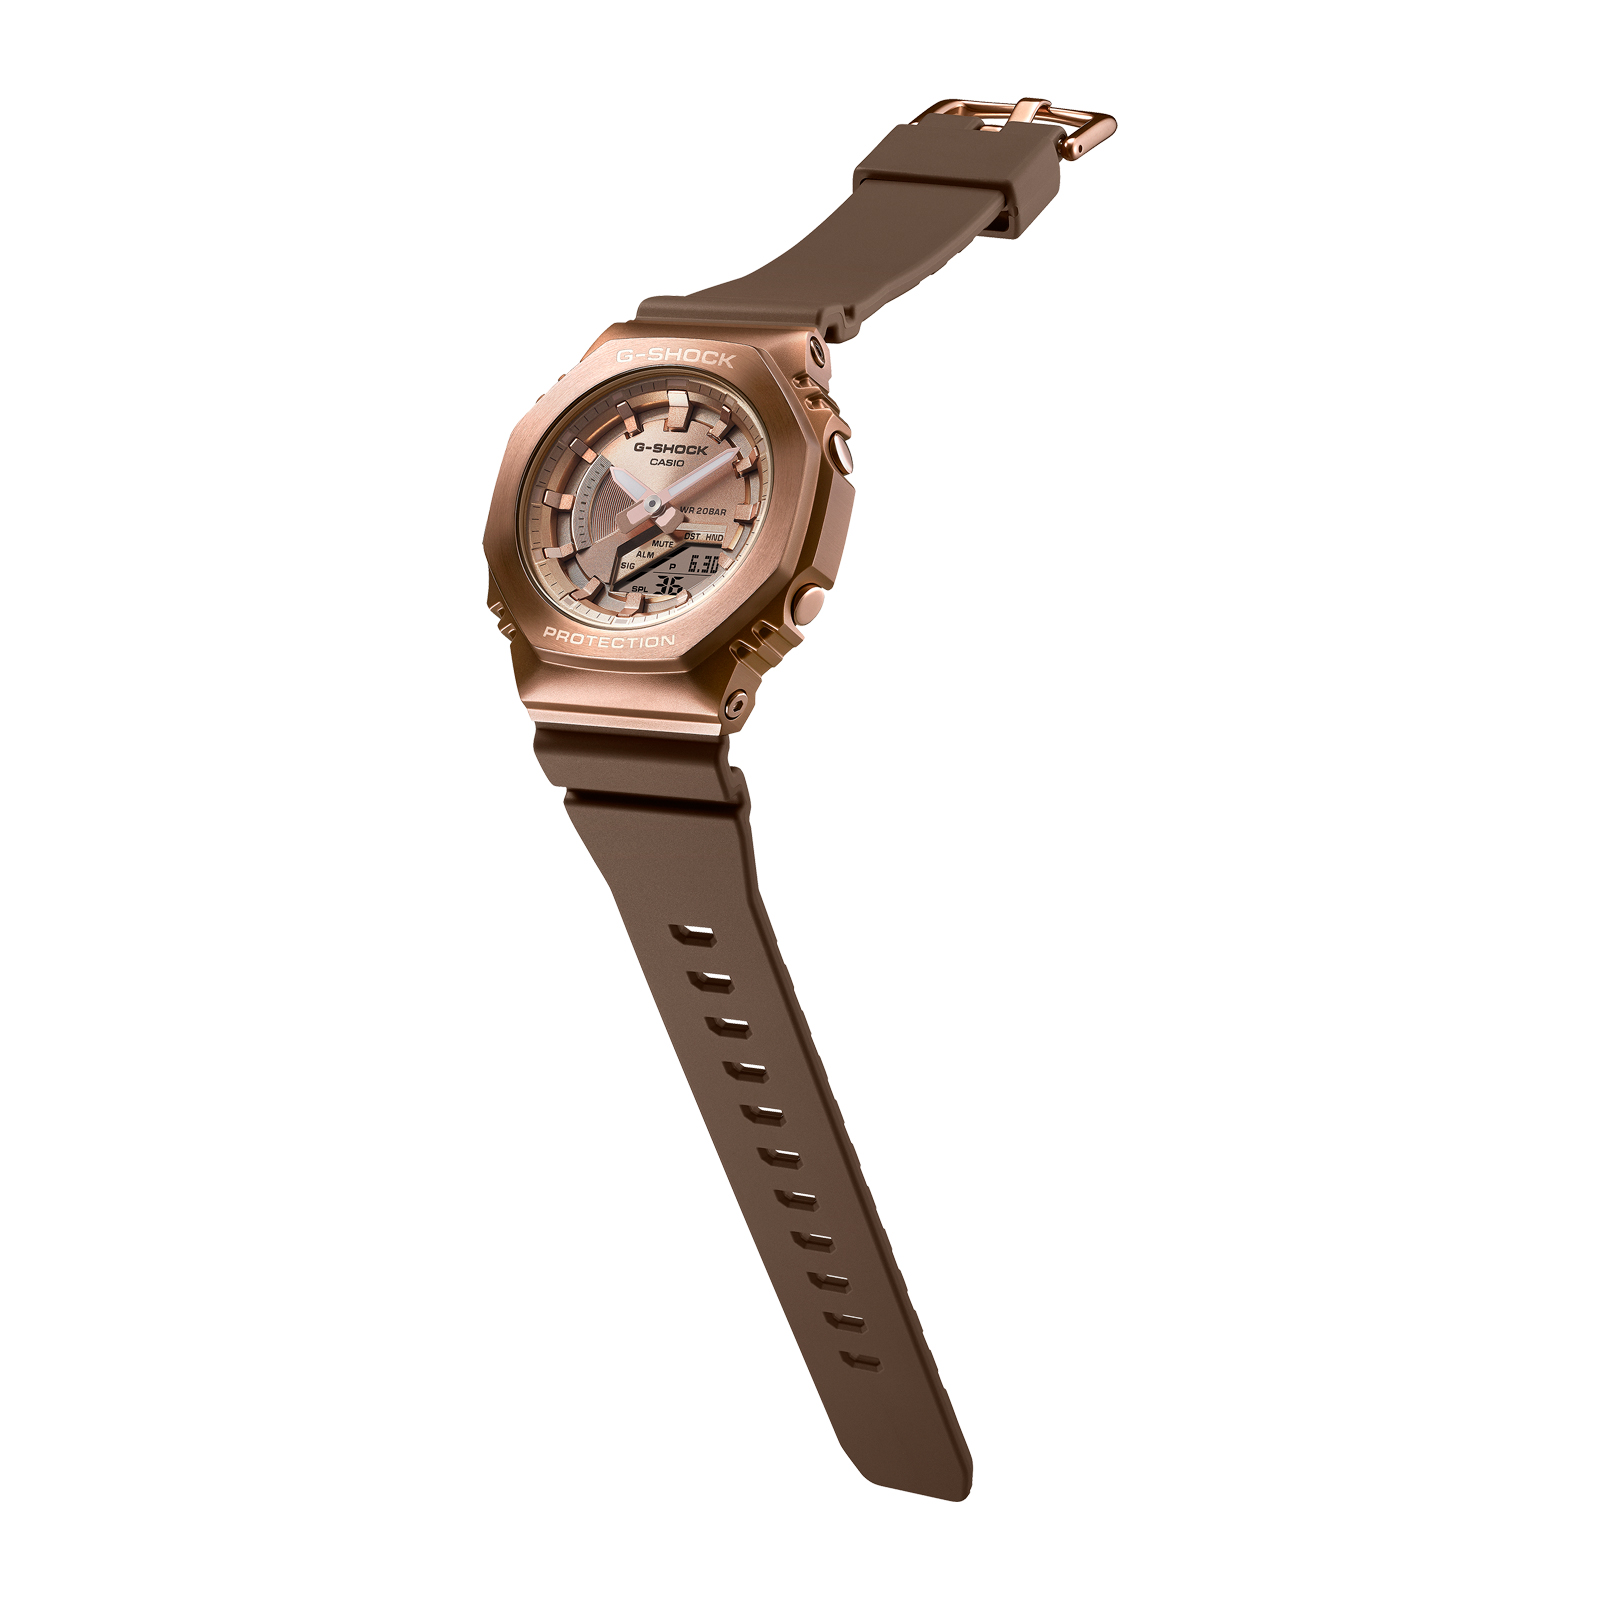 Reloj G-SHOCK GM-S2100BR-5A Resina/Acero Mujer Oro Rosa